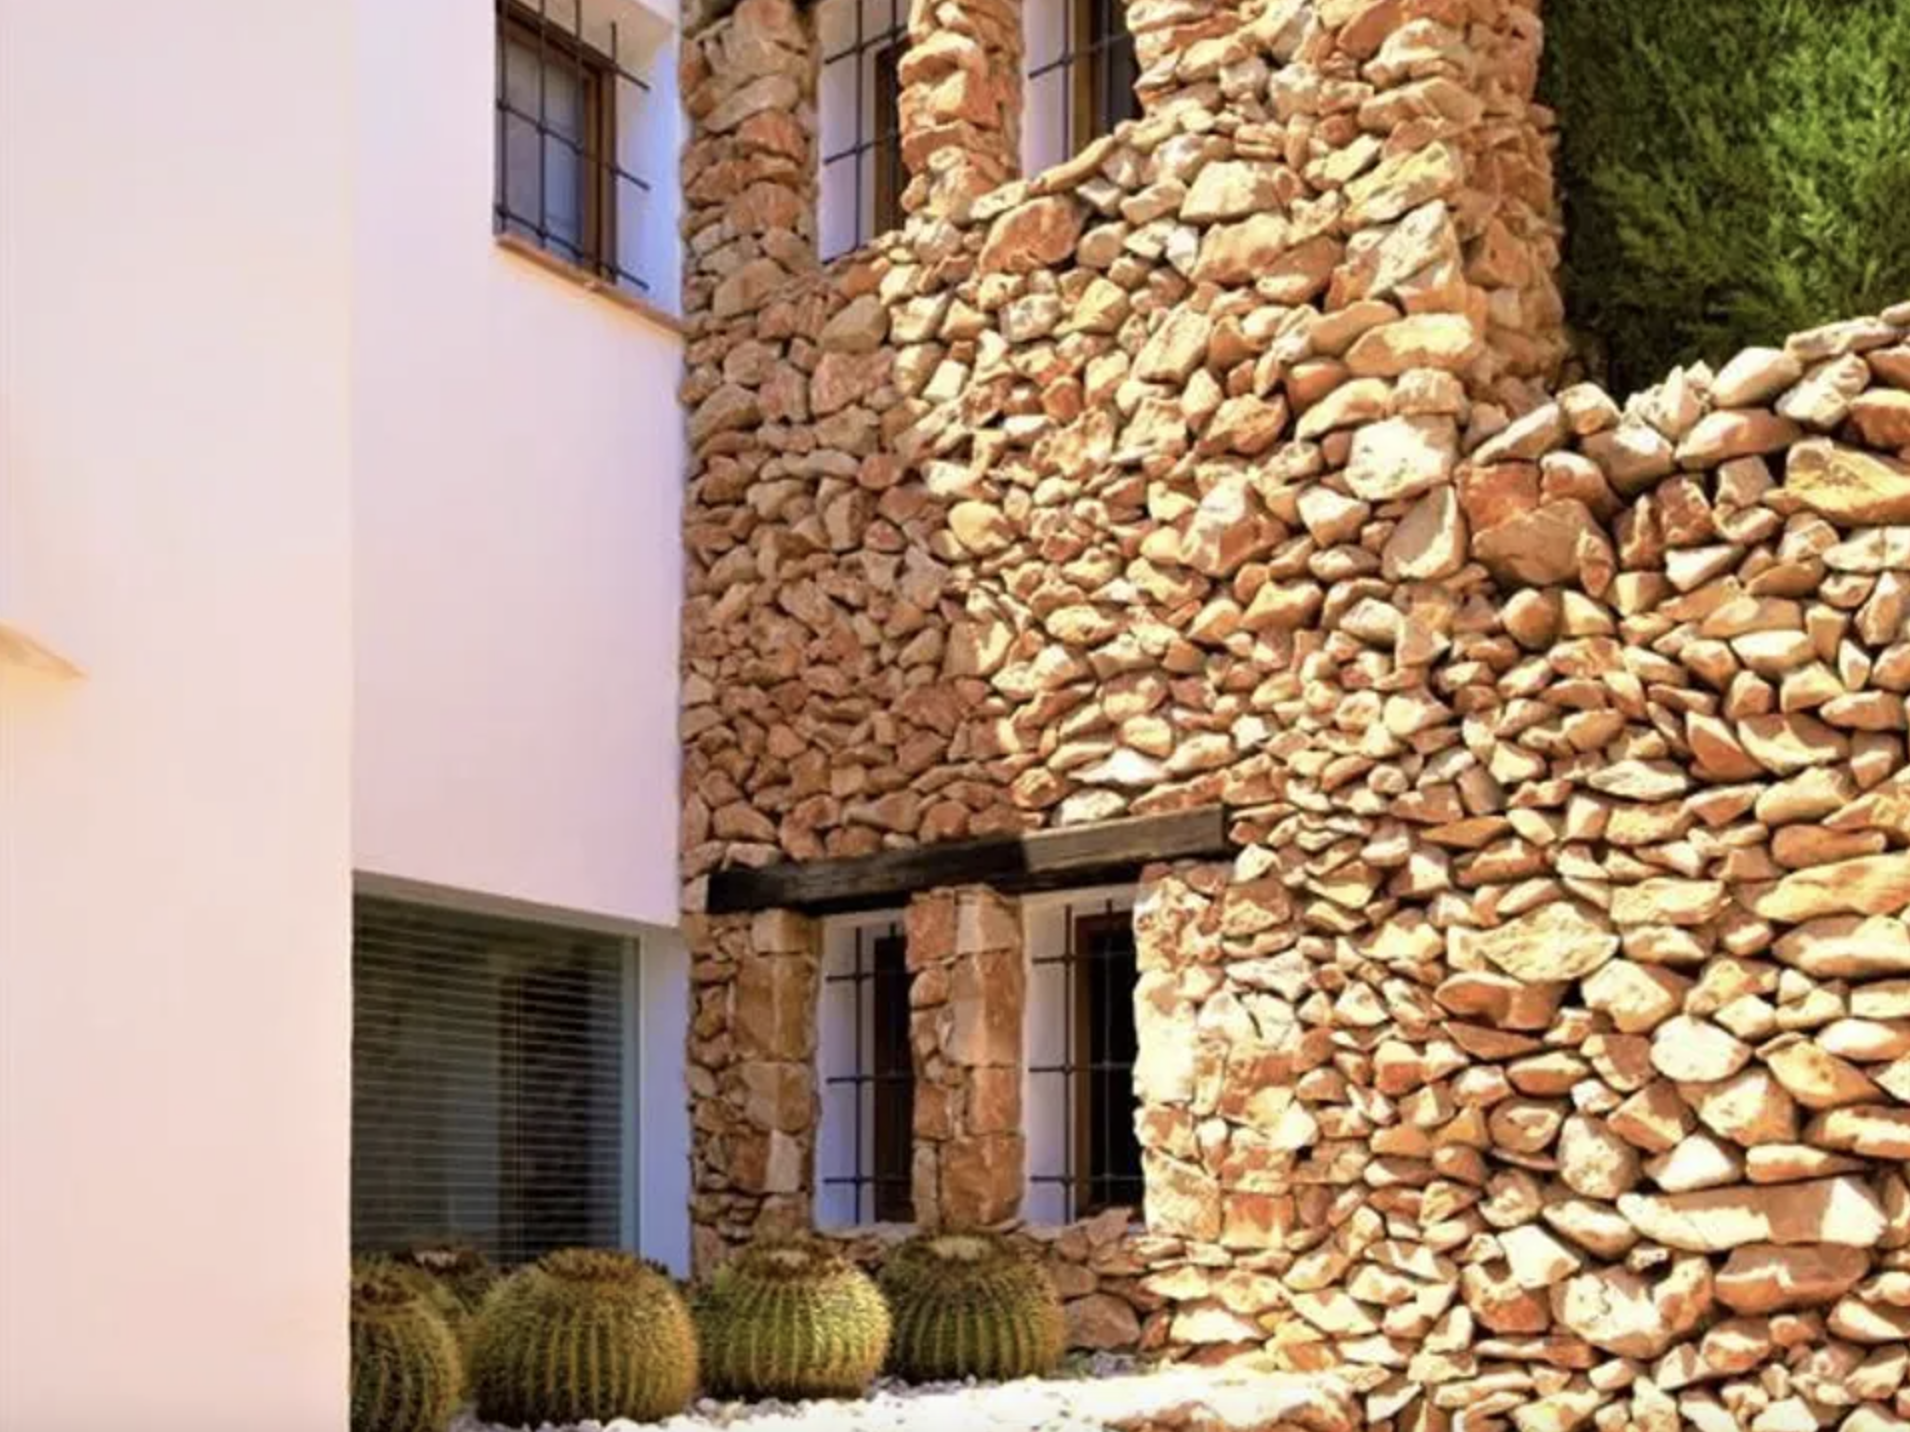 Luxusvilla im Ibiza-Stil in Moraira mit Meerblick